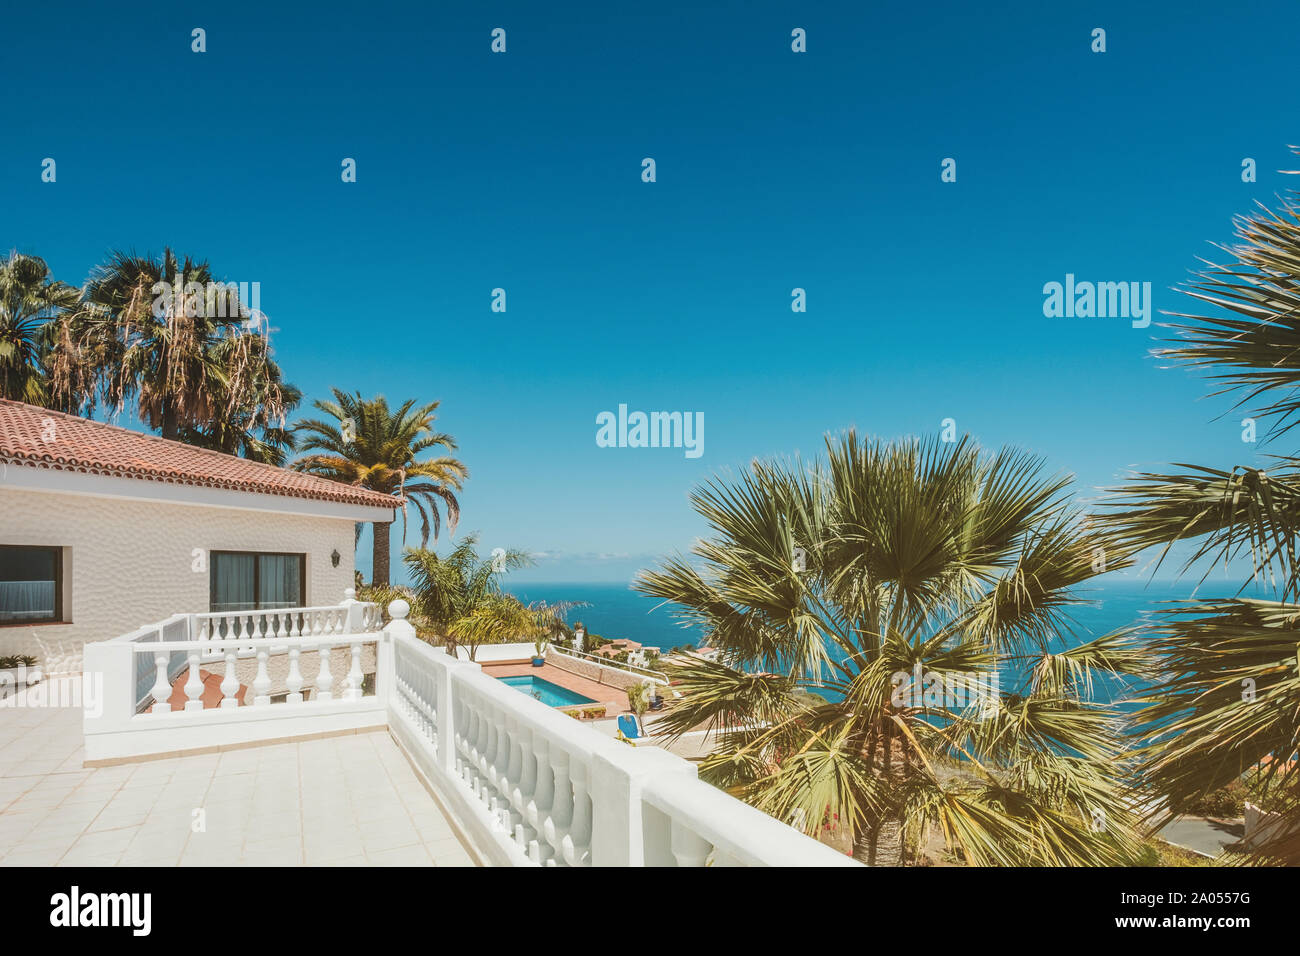 Casa con piscina, terraza y palmeras y vistas al mar Foto de stock